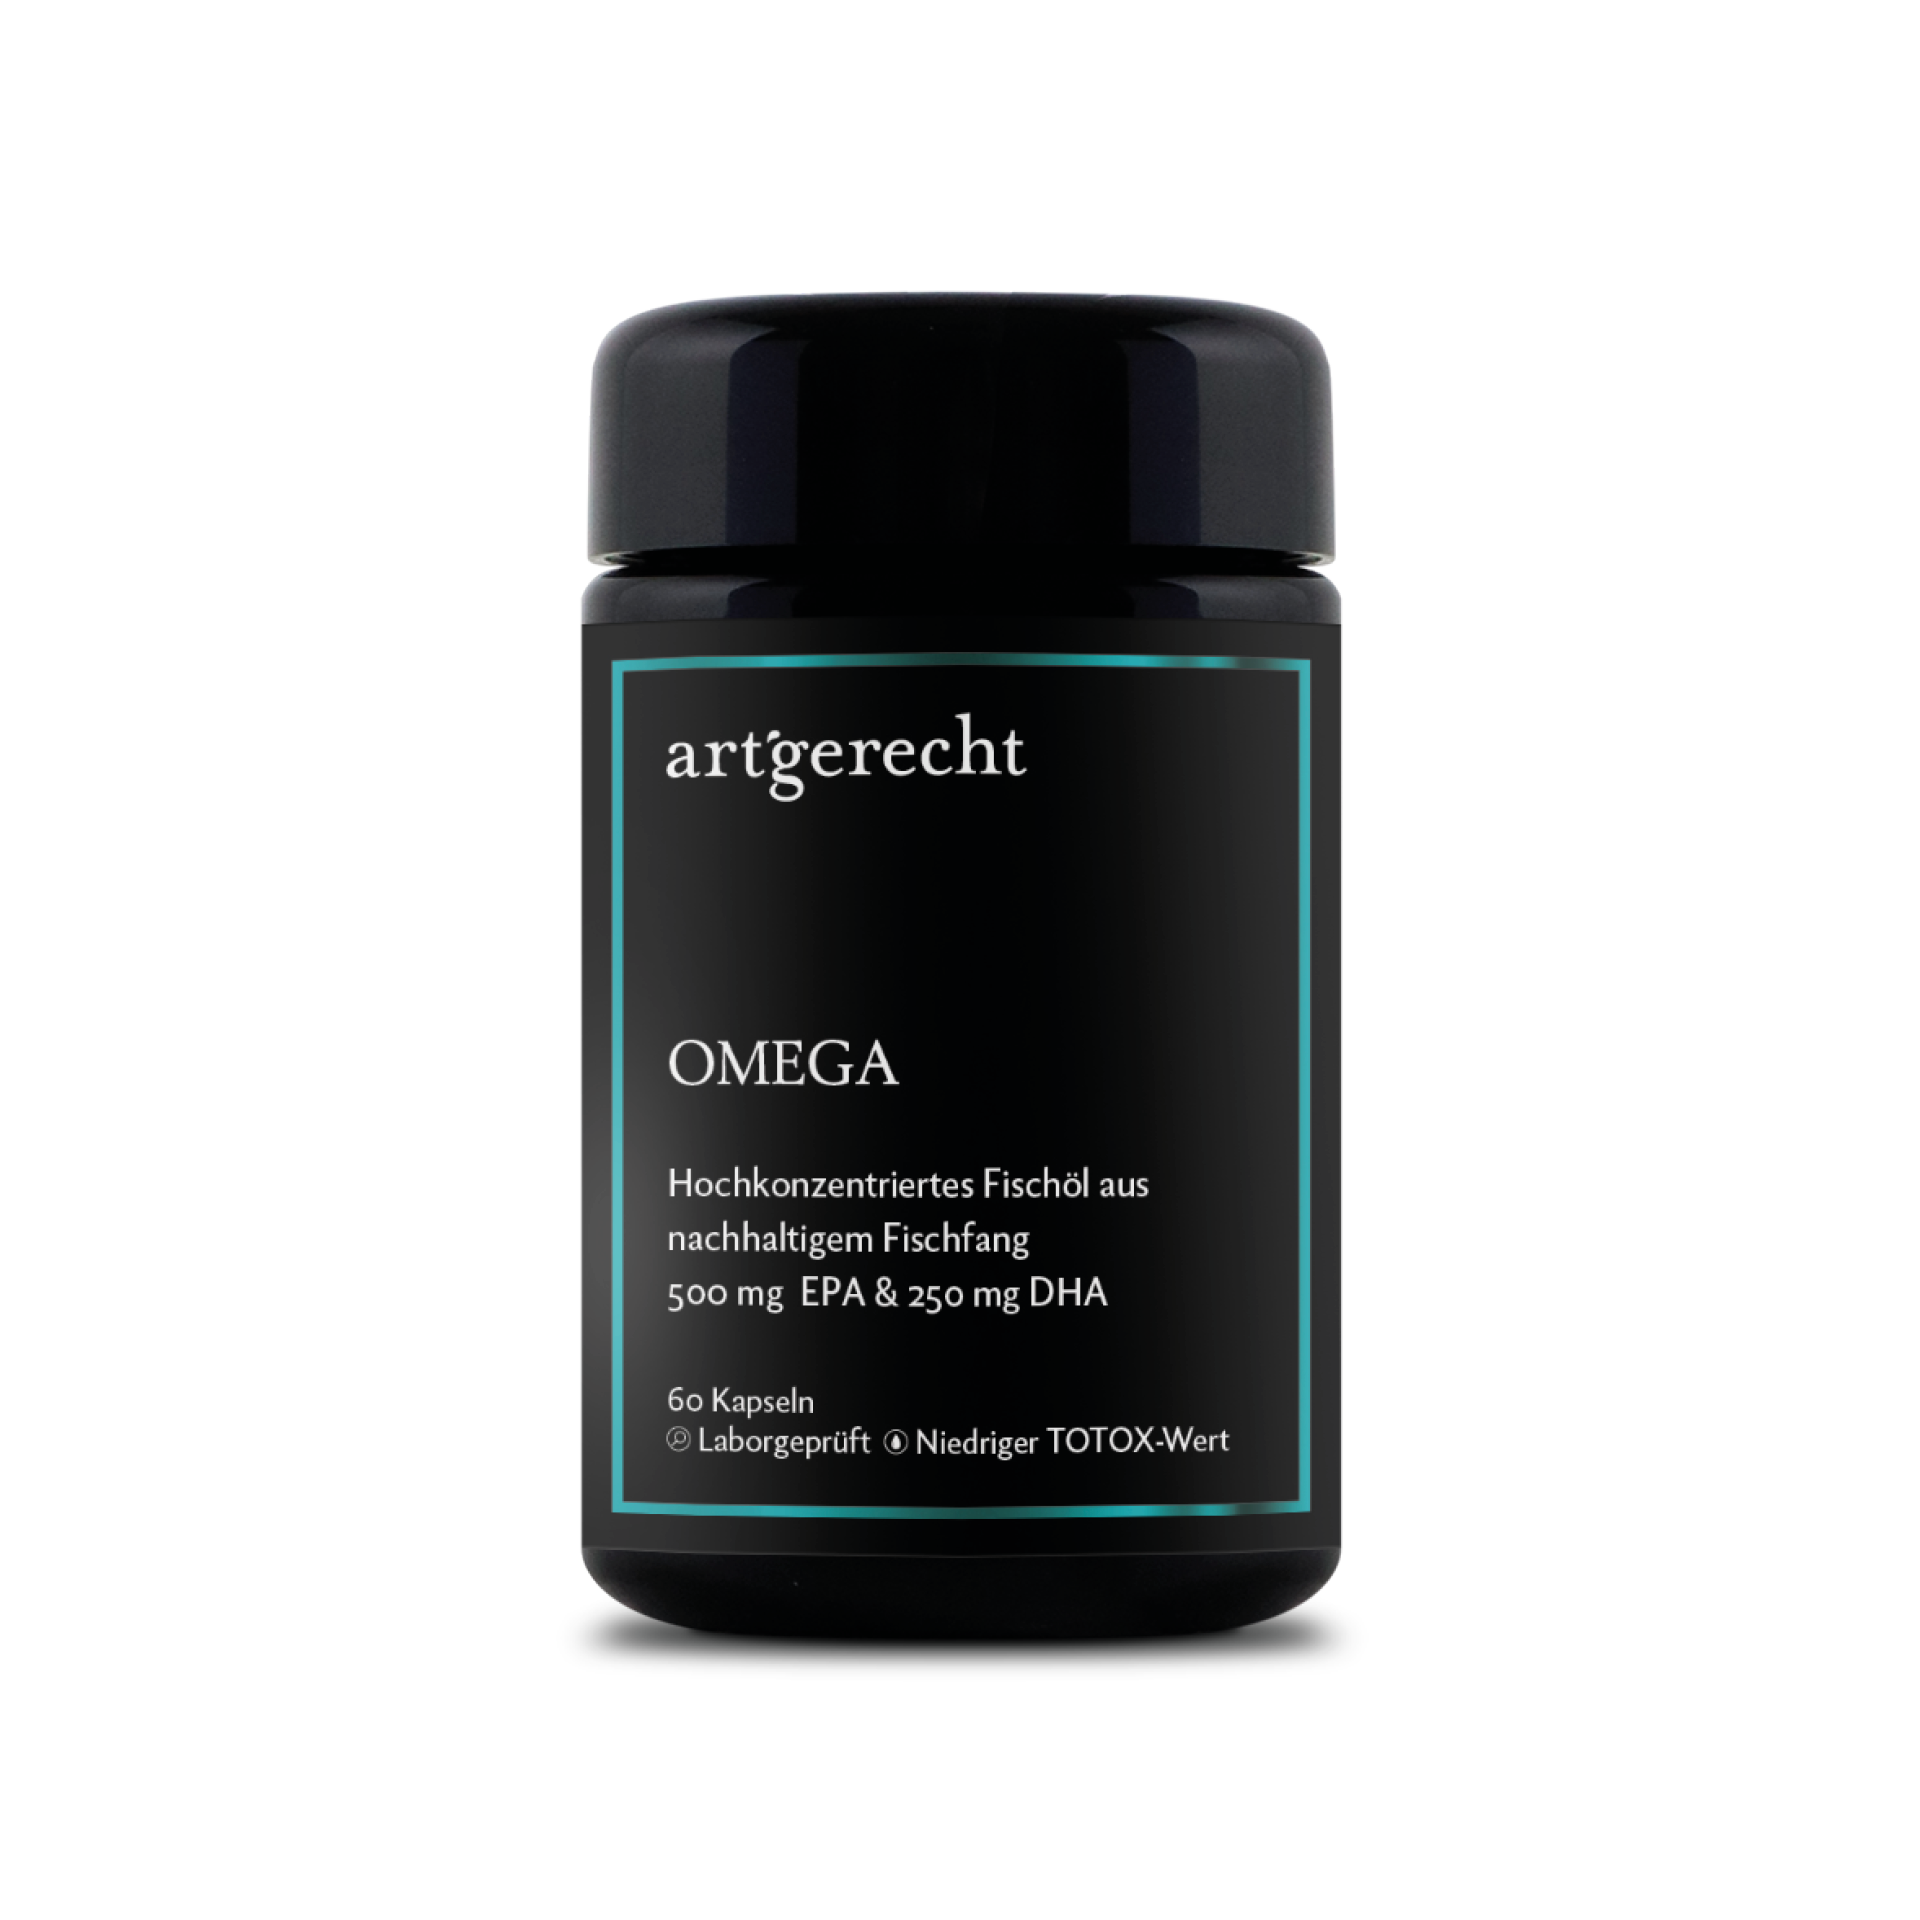 Omega-3, artgerecht